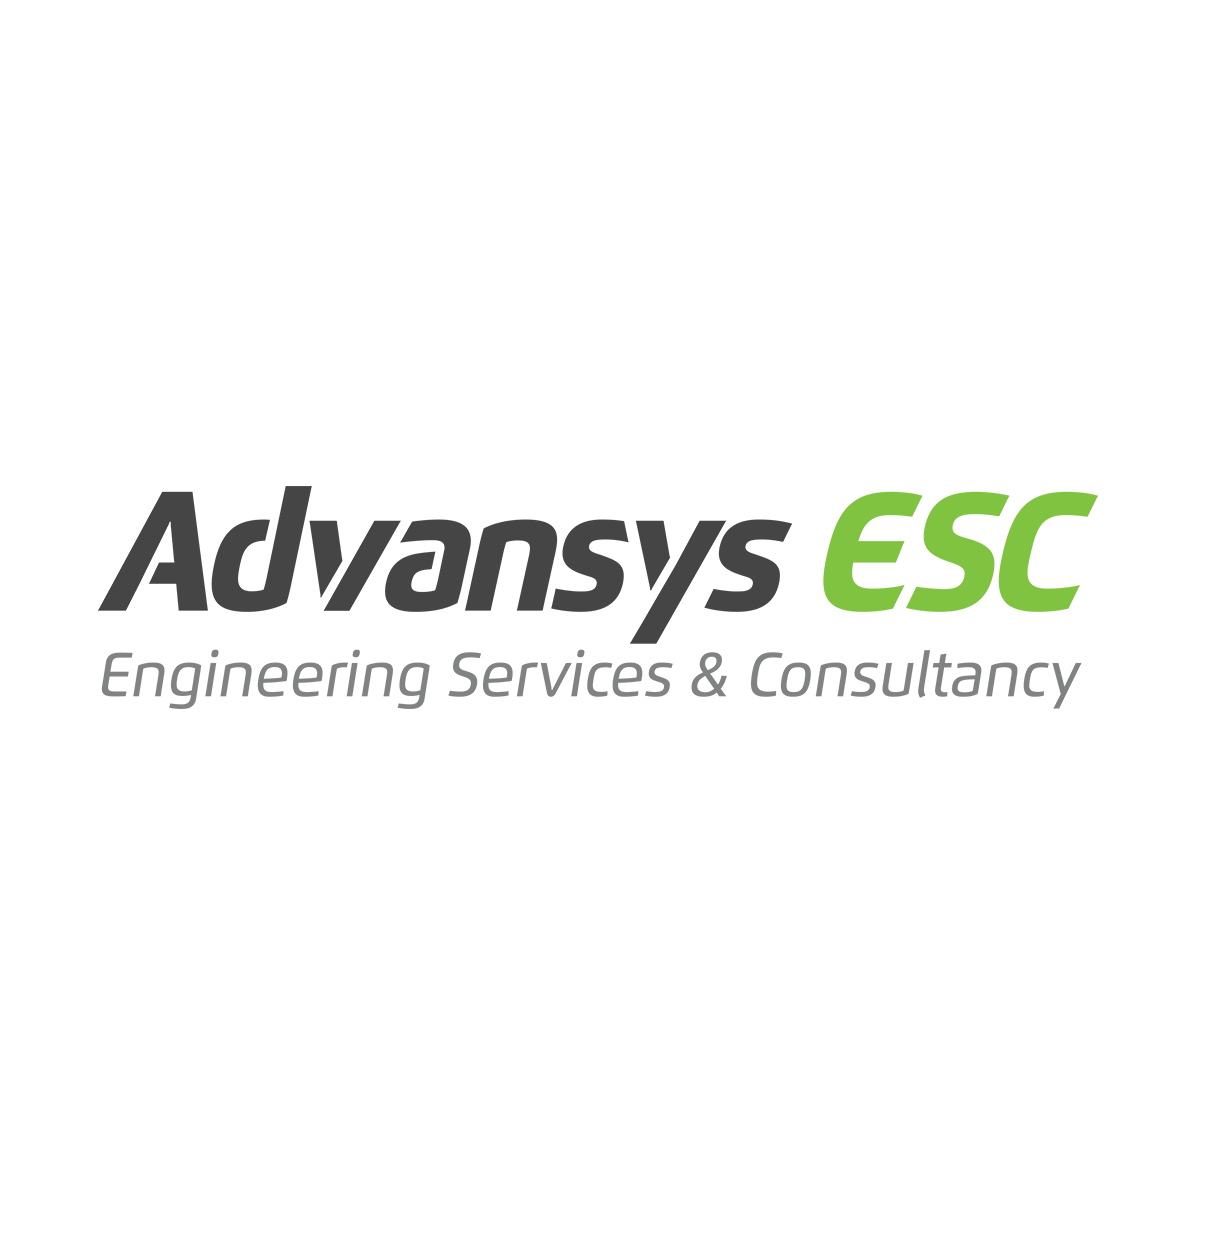 Advansys ESC